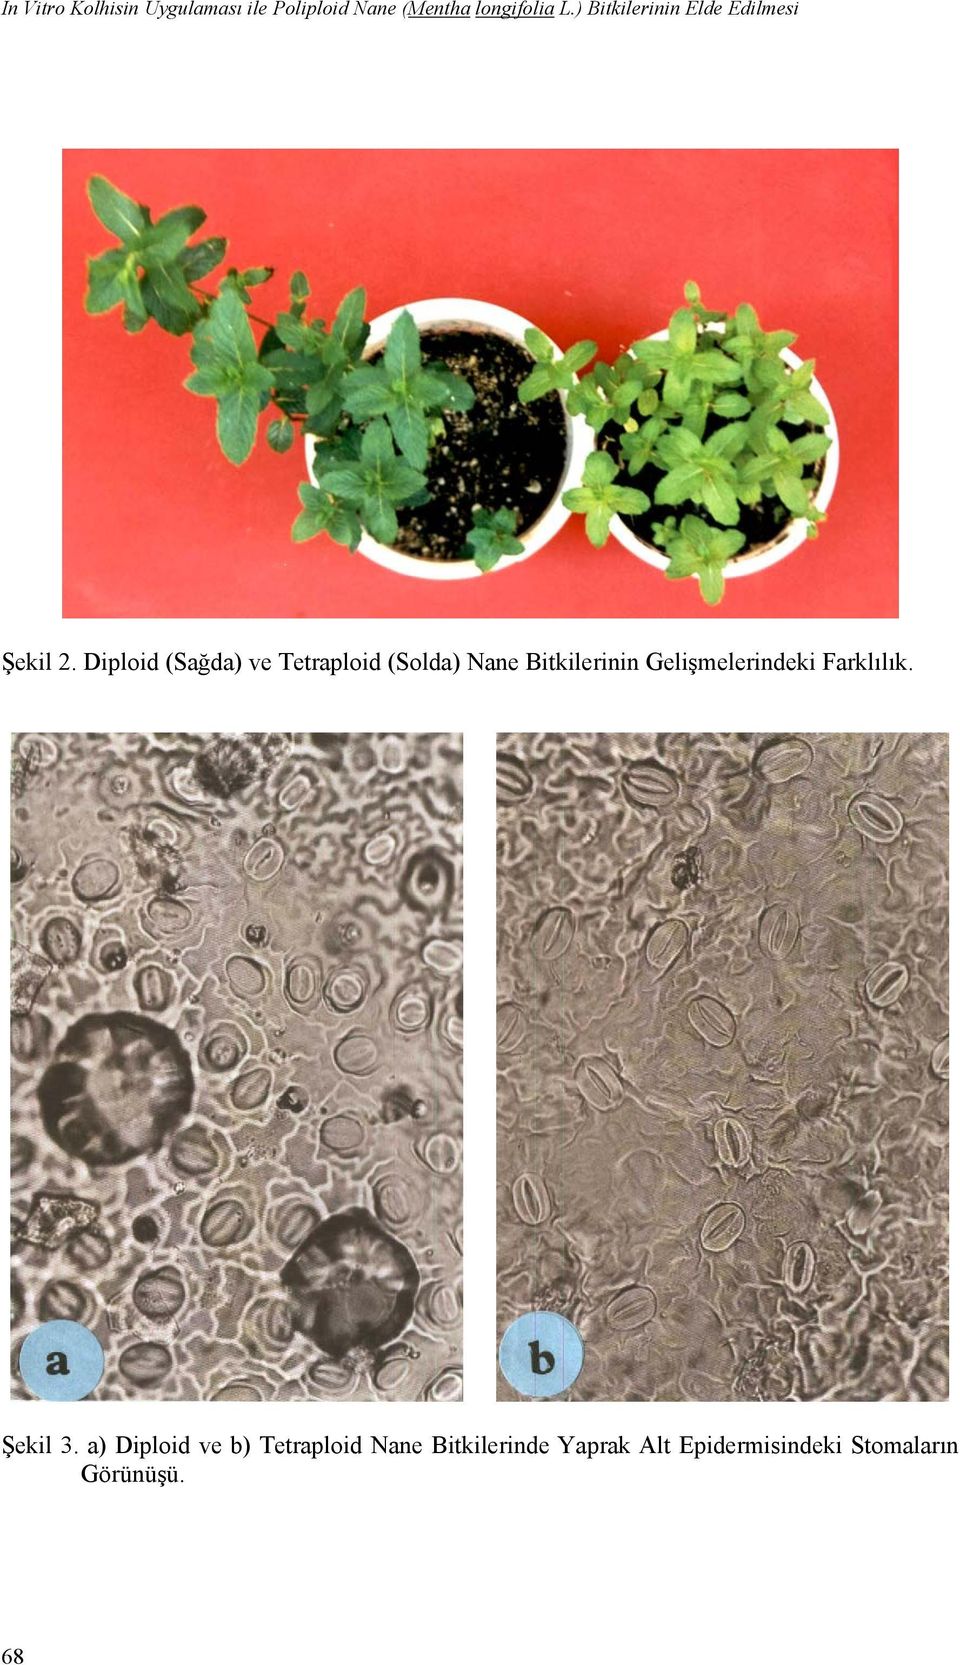 Diploid (Sağda) ve Tetraploid (Solda) Nane Bitkilerinin Gelişmelerindeki